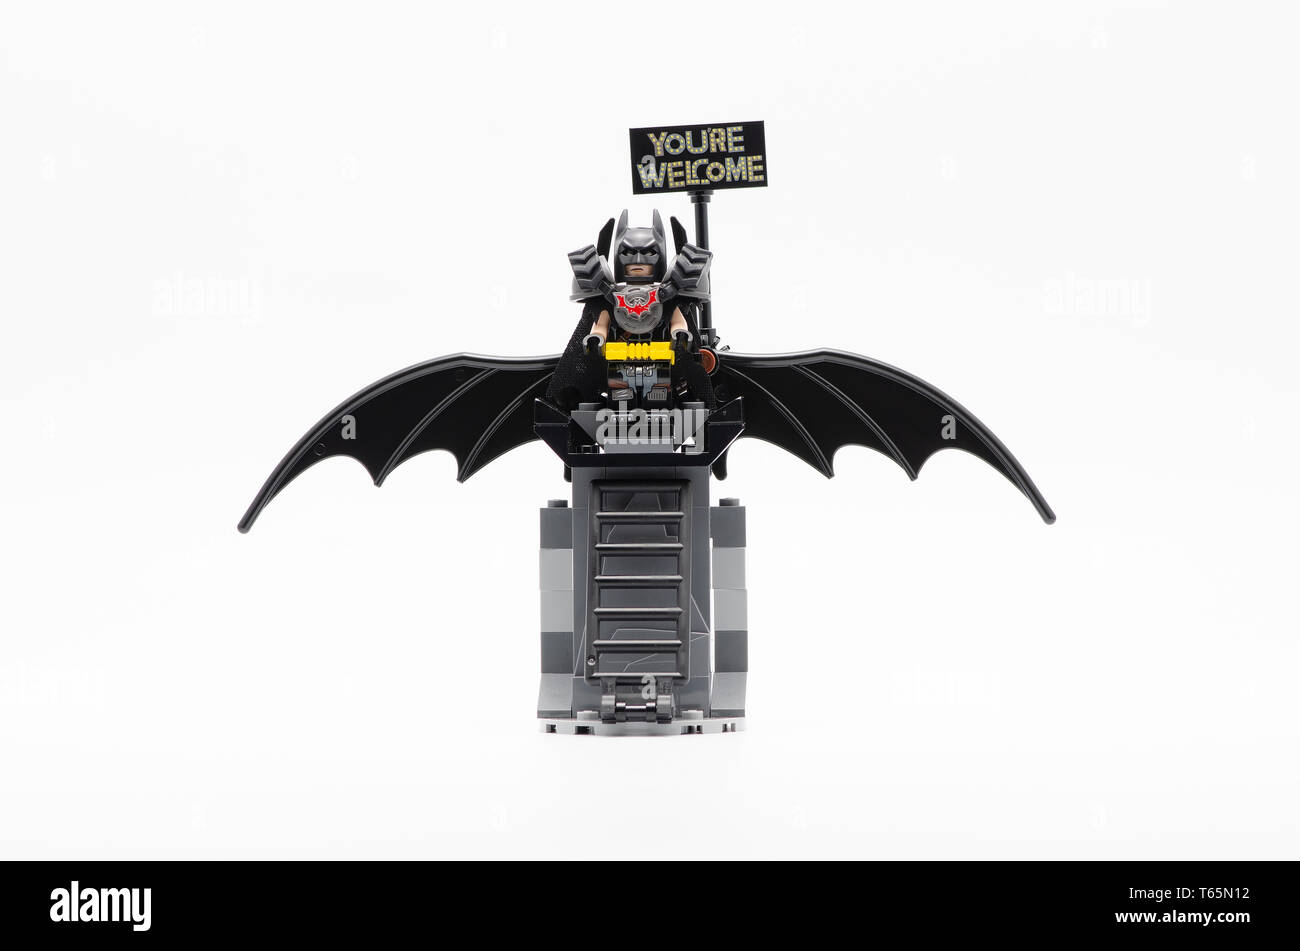 LEGO Battle Ready Batman Minifigure